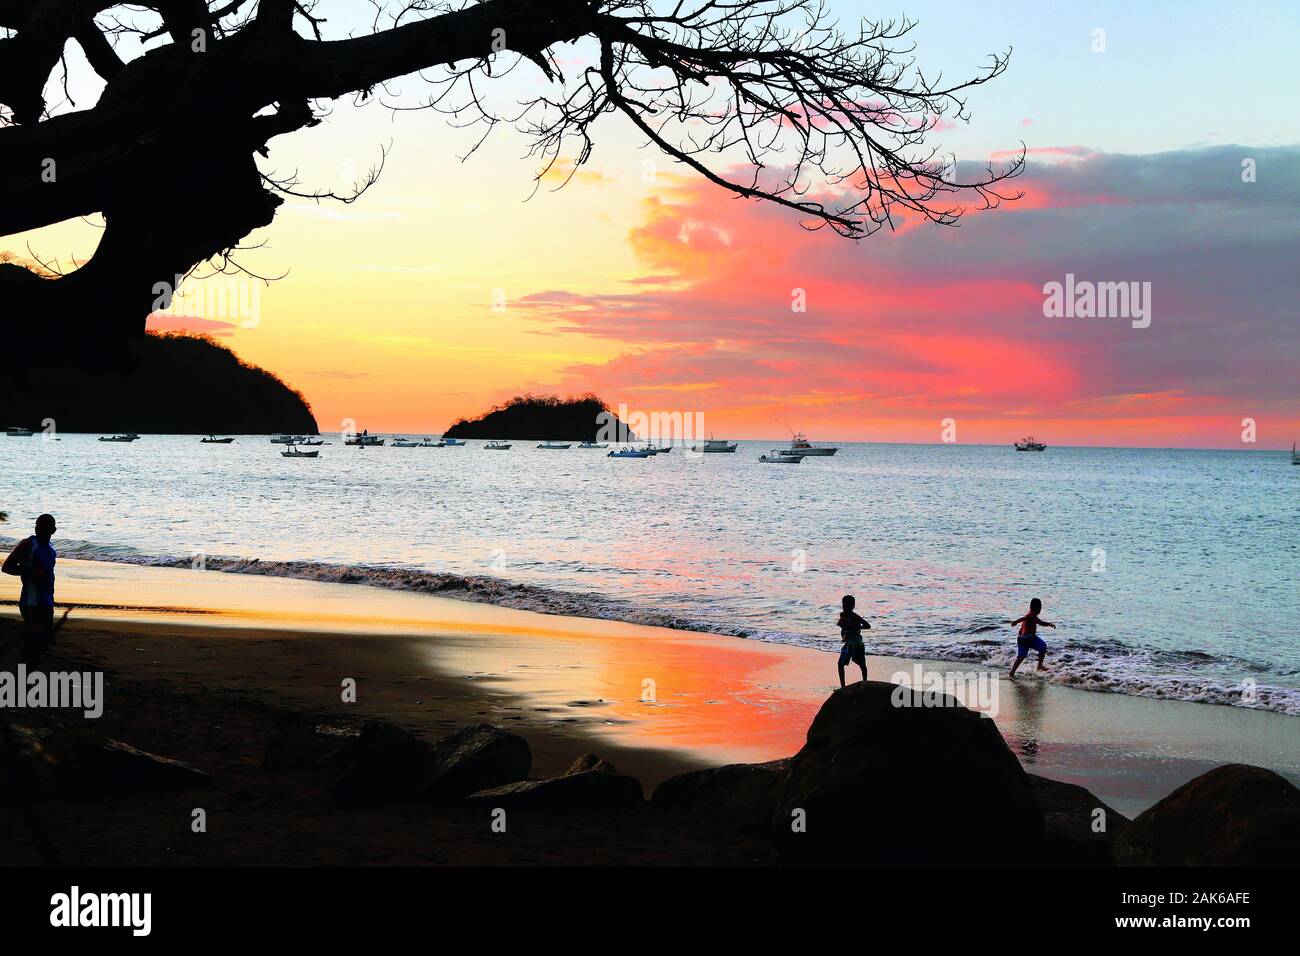 Provinz Guanacaste: Sonnenuntergang an der Playa Hermosa in der Papagayo Bay, Costa Rica | usage worldwide Stock Photo